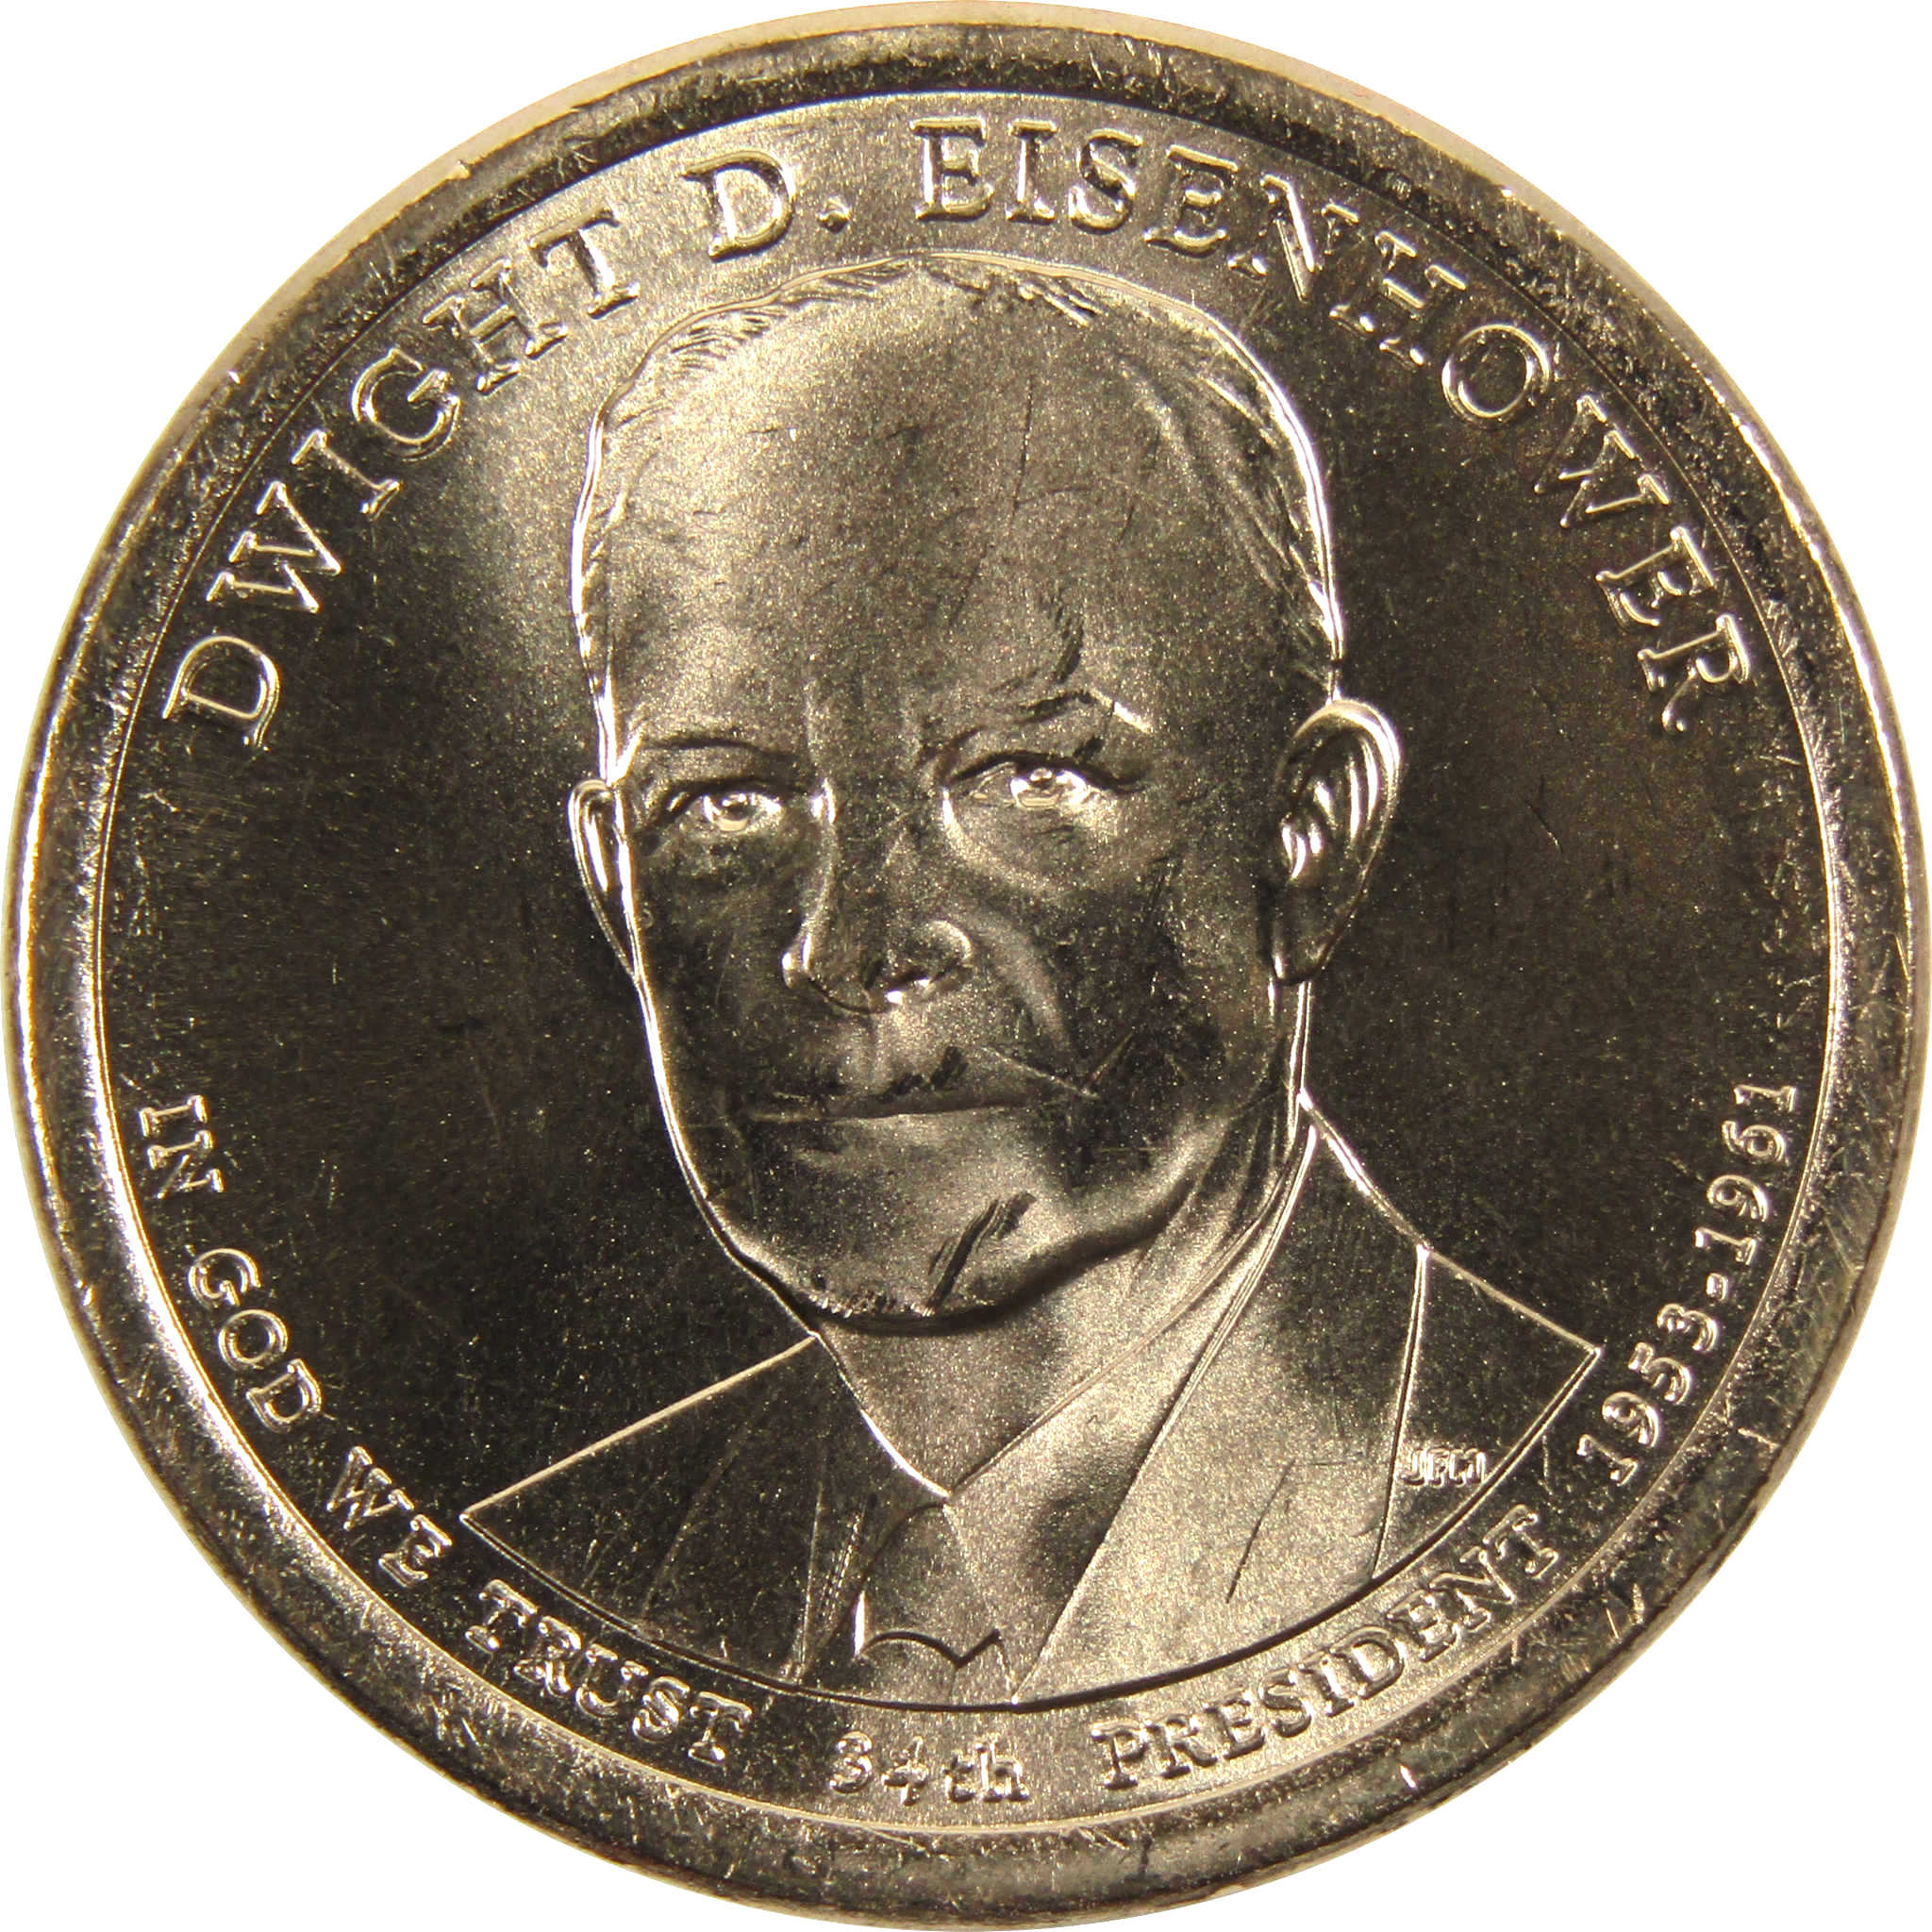 2015 D Dwight D Eisenhower Presidential Dollar BU Uncirculated $1 Coin